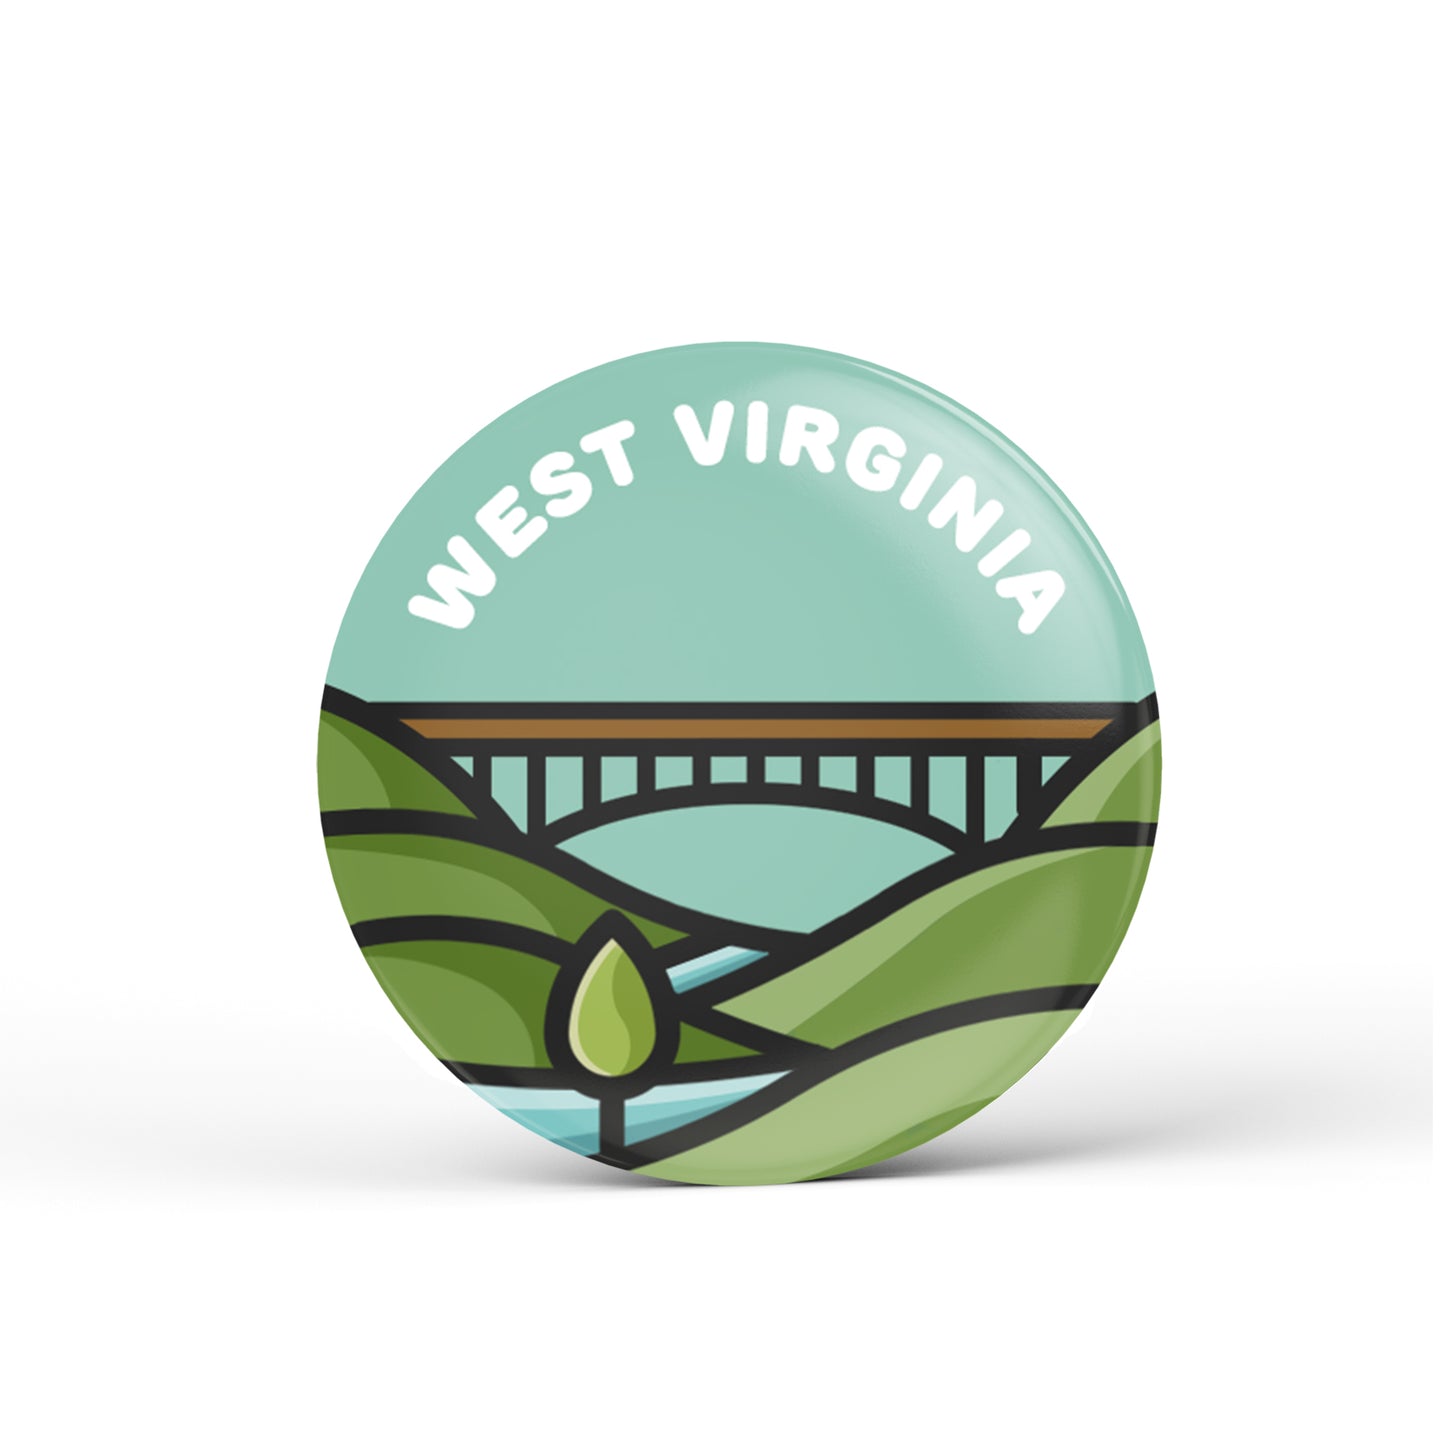 West Virginia Button